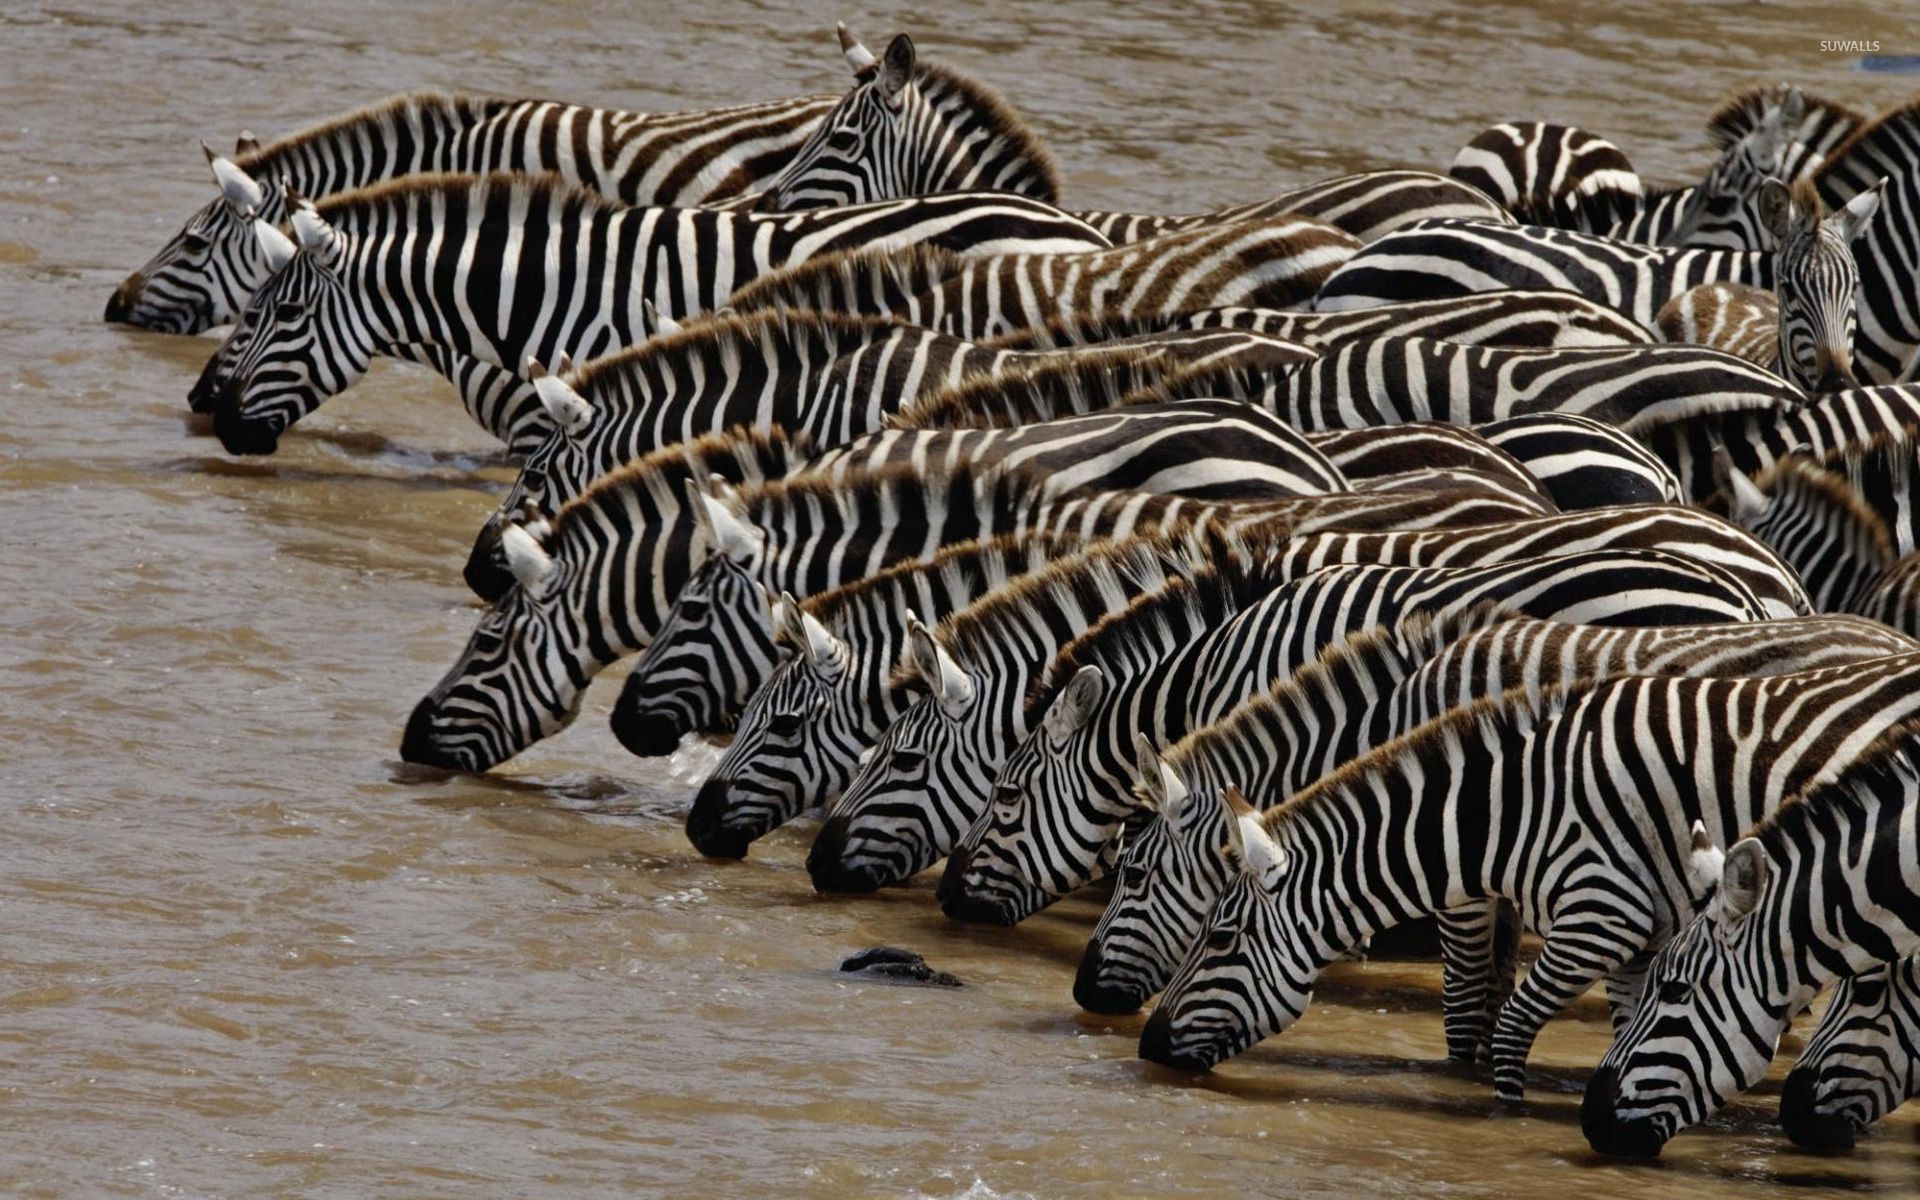 Zebras drinking water photo